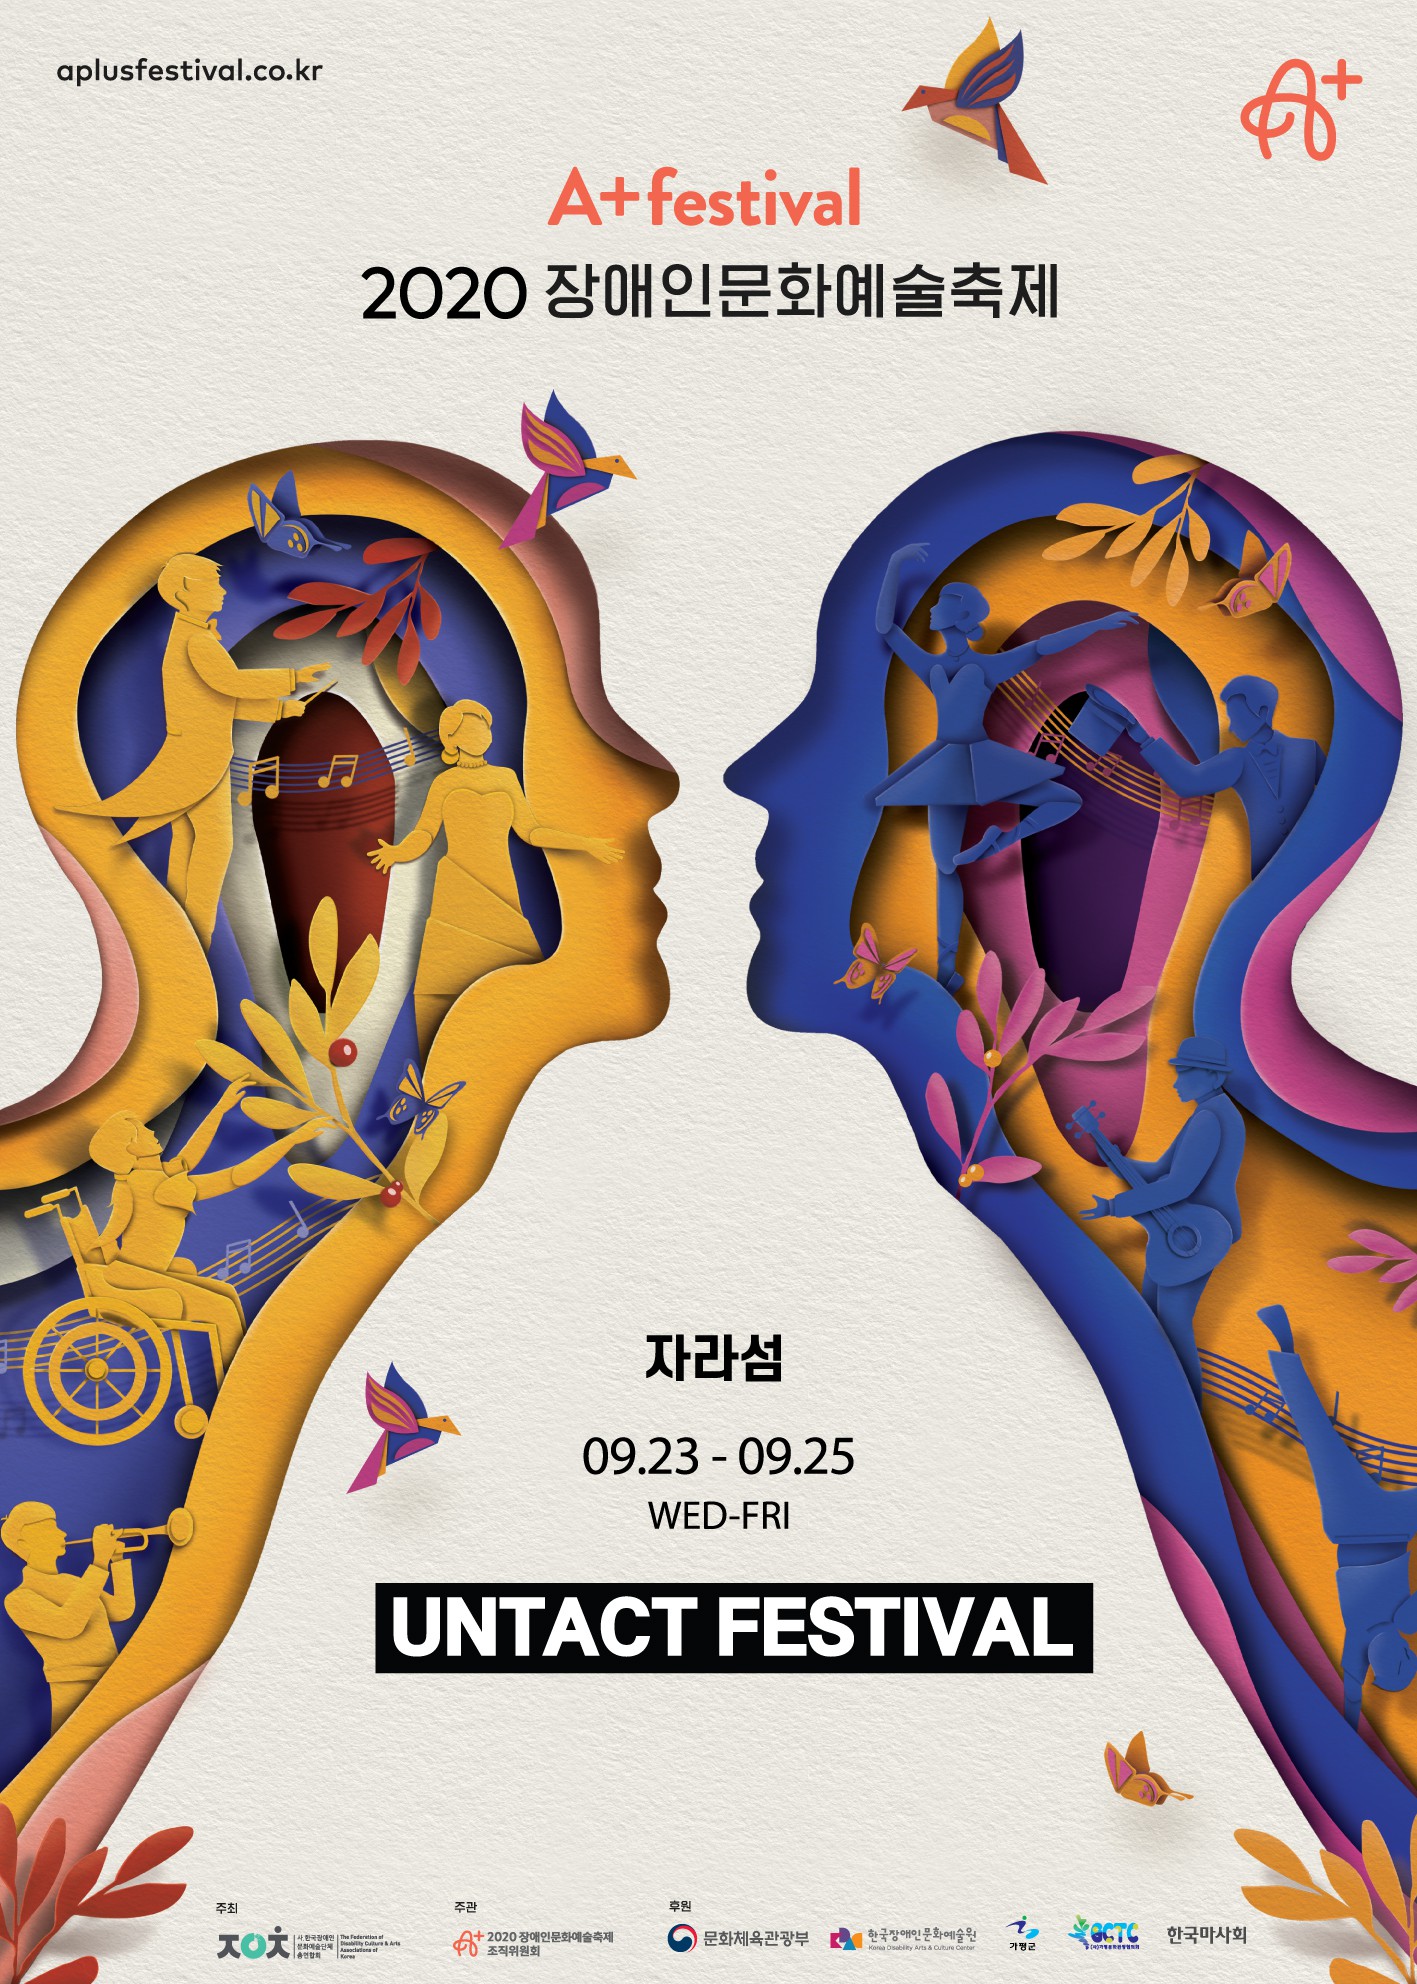 2020 장애인문화예술축제 A+ Festival 개최